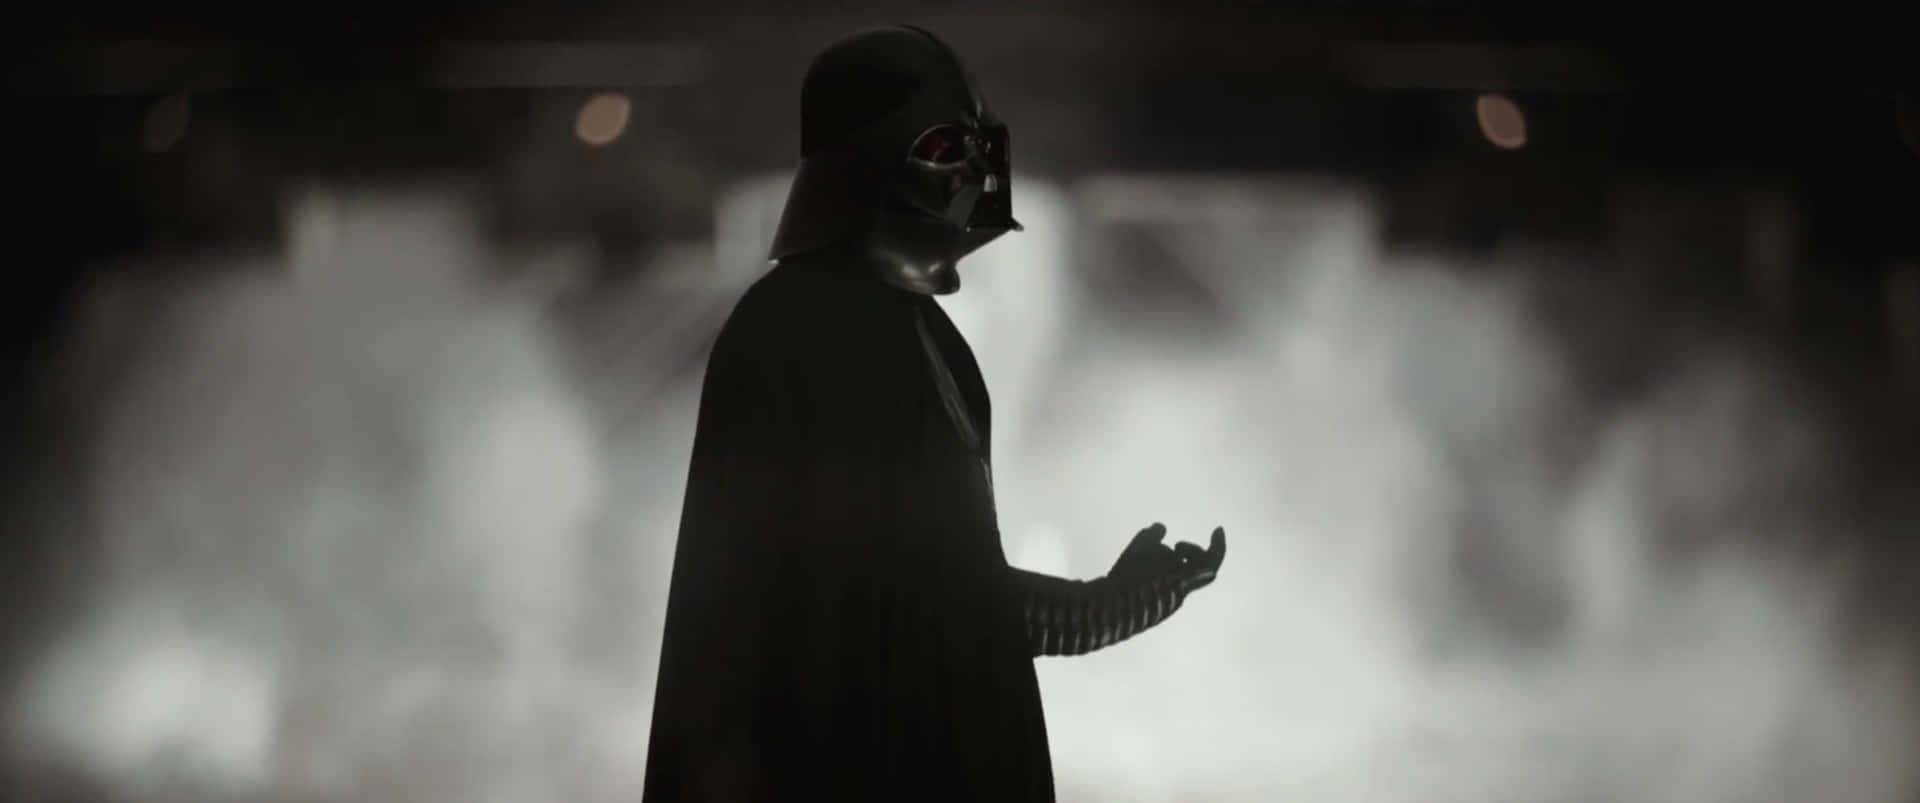 Darth Vader In The Dark Background